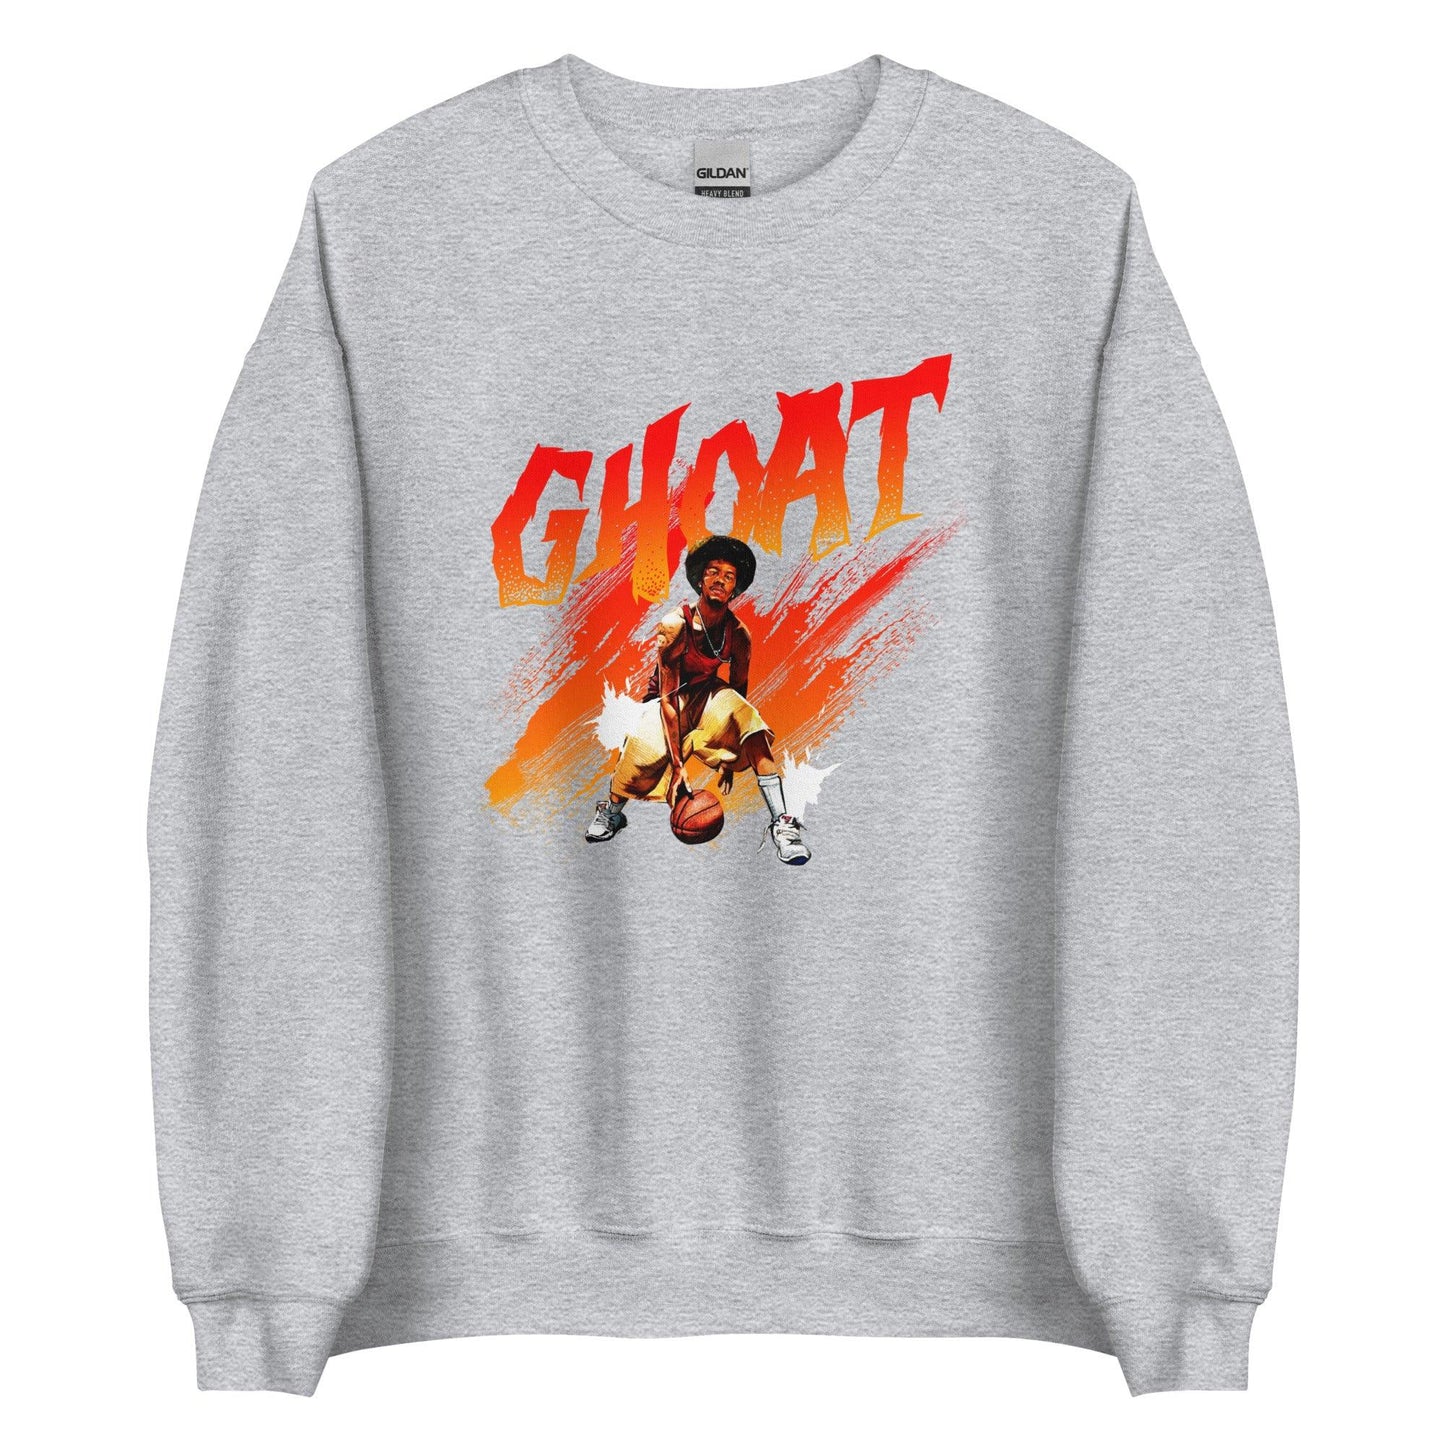 Hot Sauce "Ghoat" Sweatshirt - Fan Arch